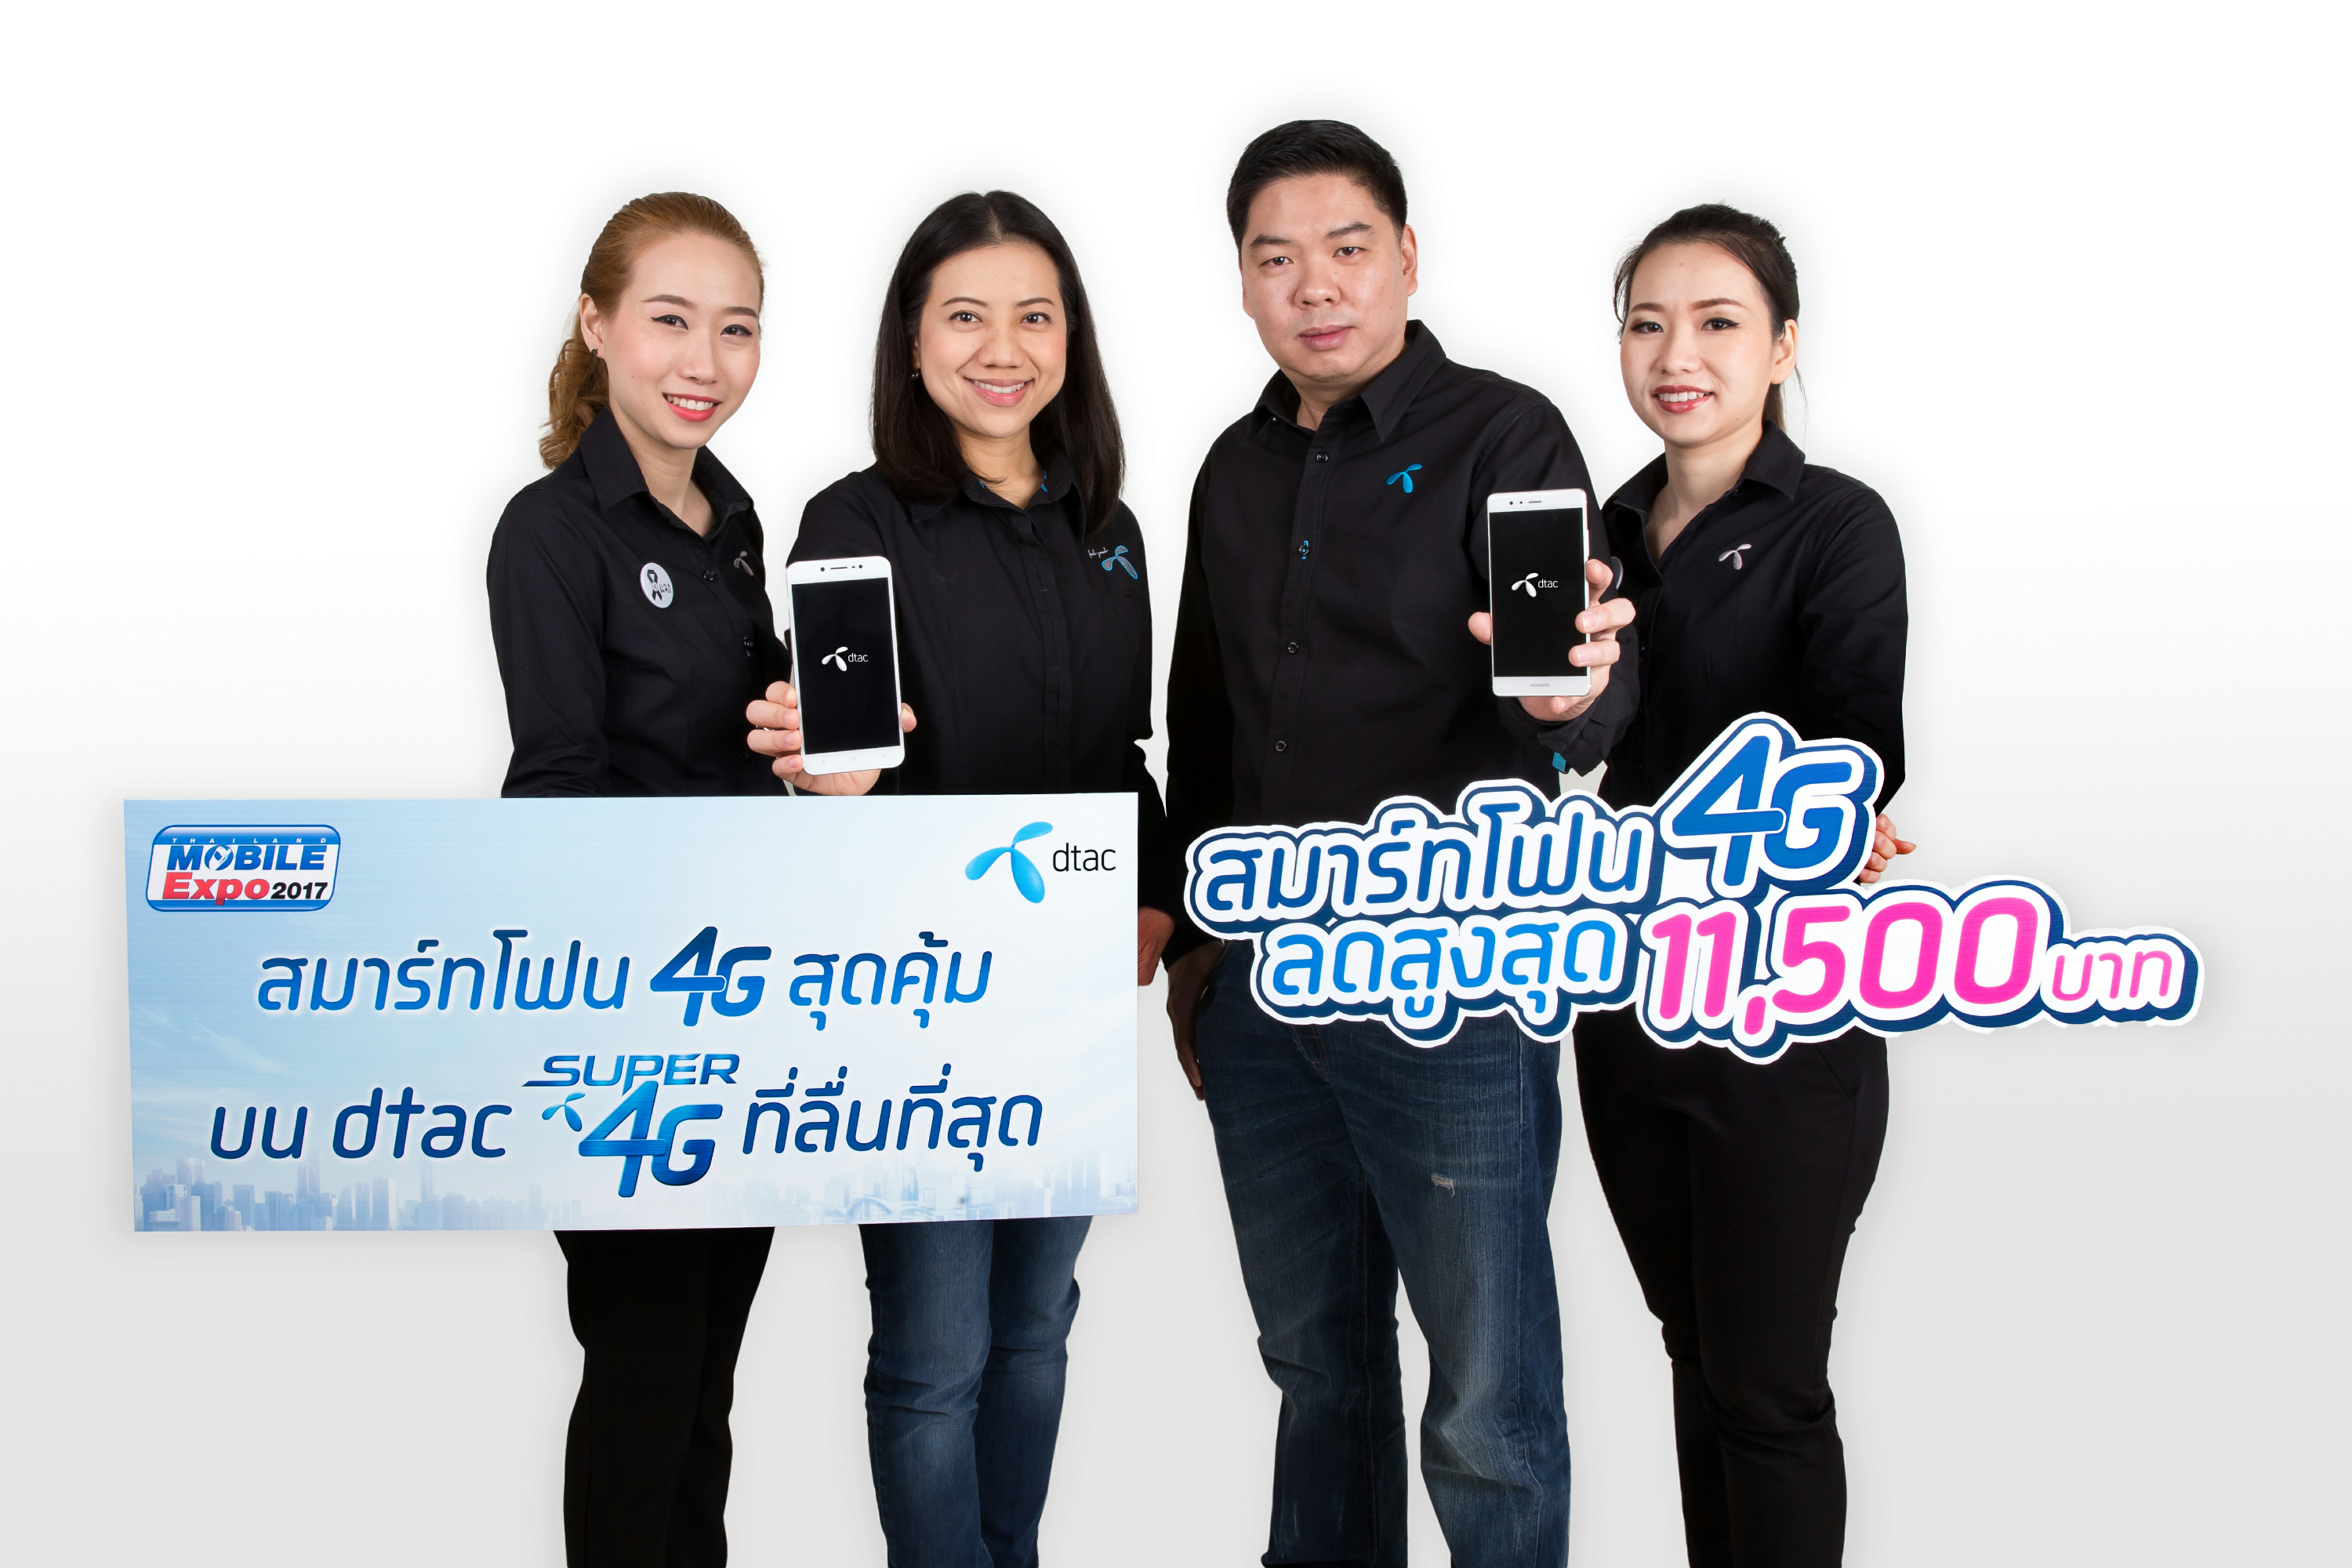 พบประสบการณ์ลื่นสุด !ในงาน Thailand Mobile Expo 2017 สุดยอดข้อเสนอสมาร์ทโฟน 4G ลดแหลกกับ dtac SUPER 4G